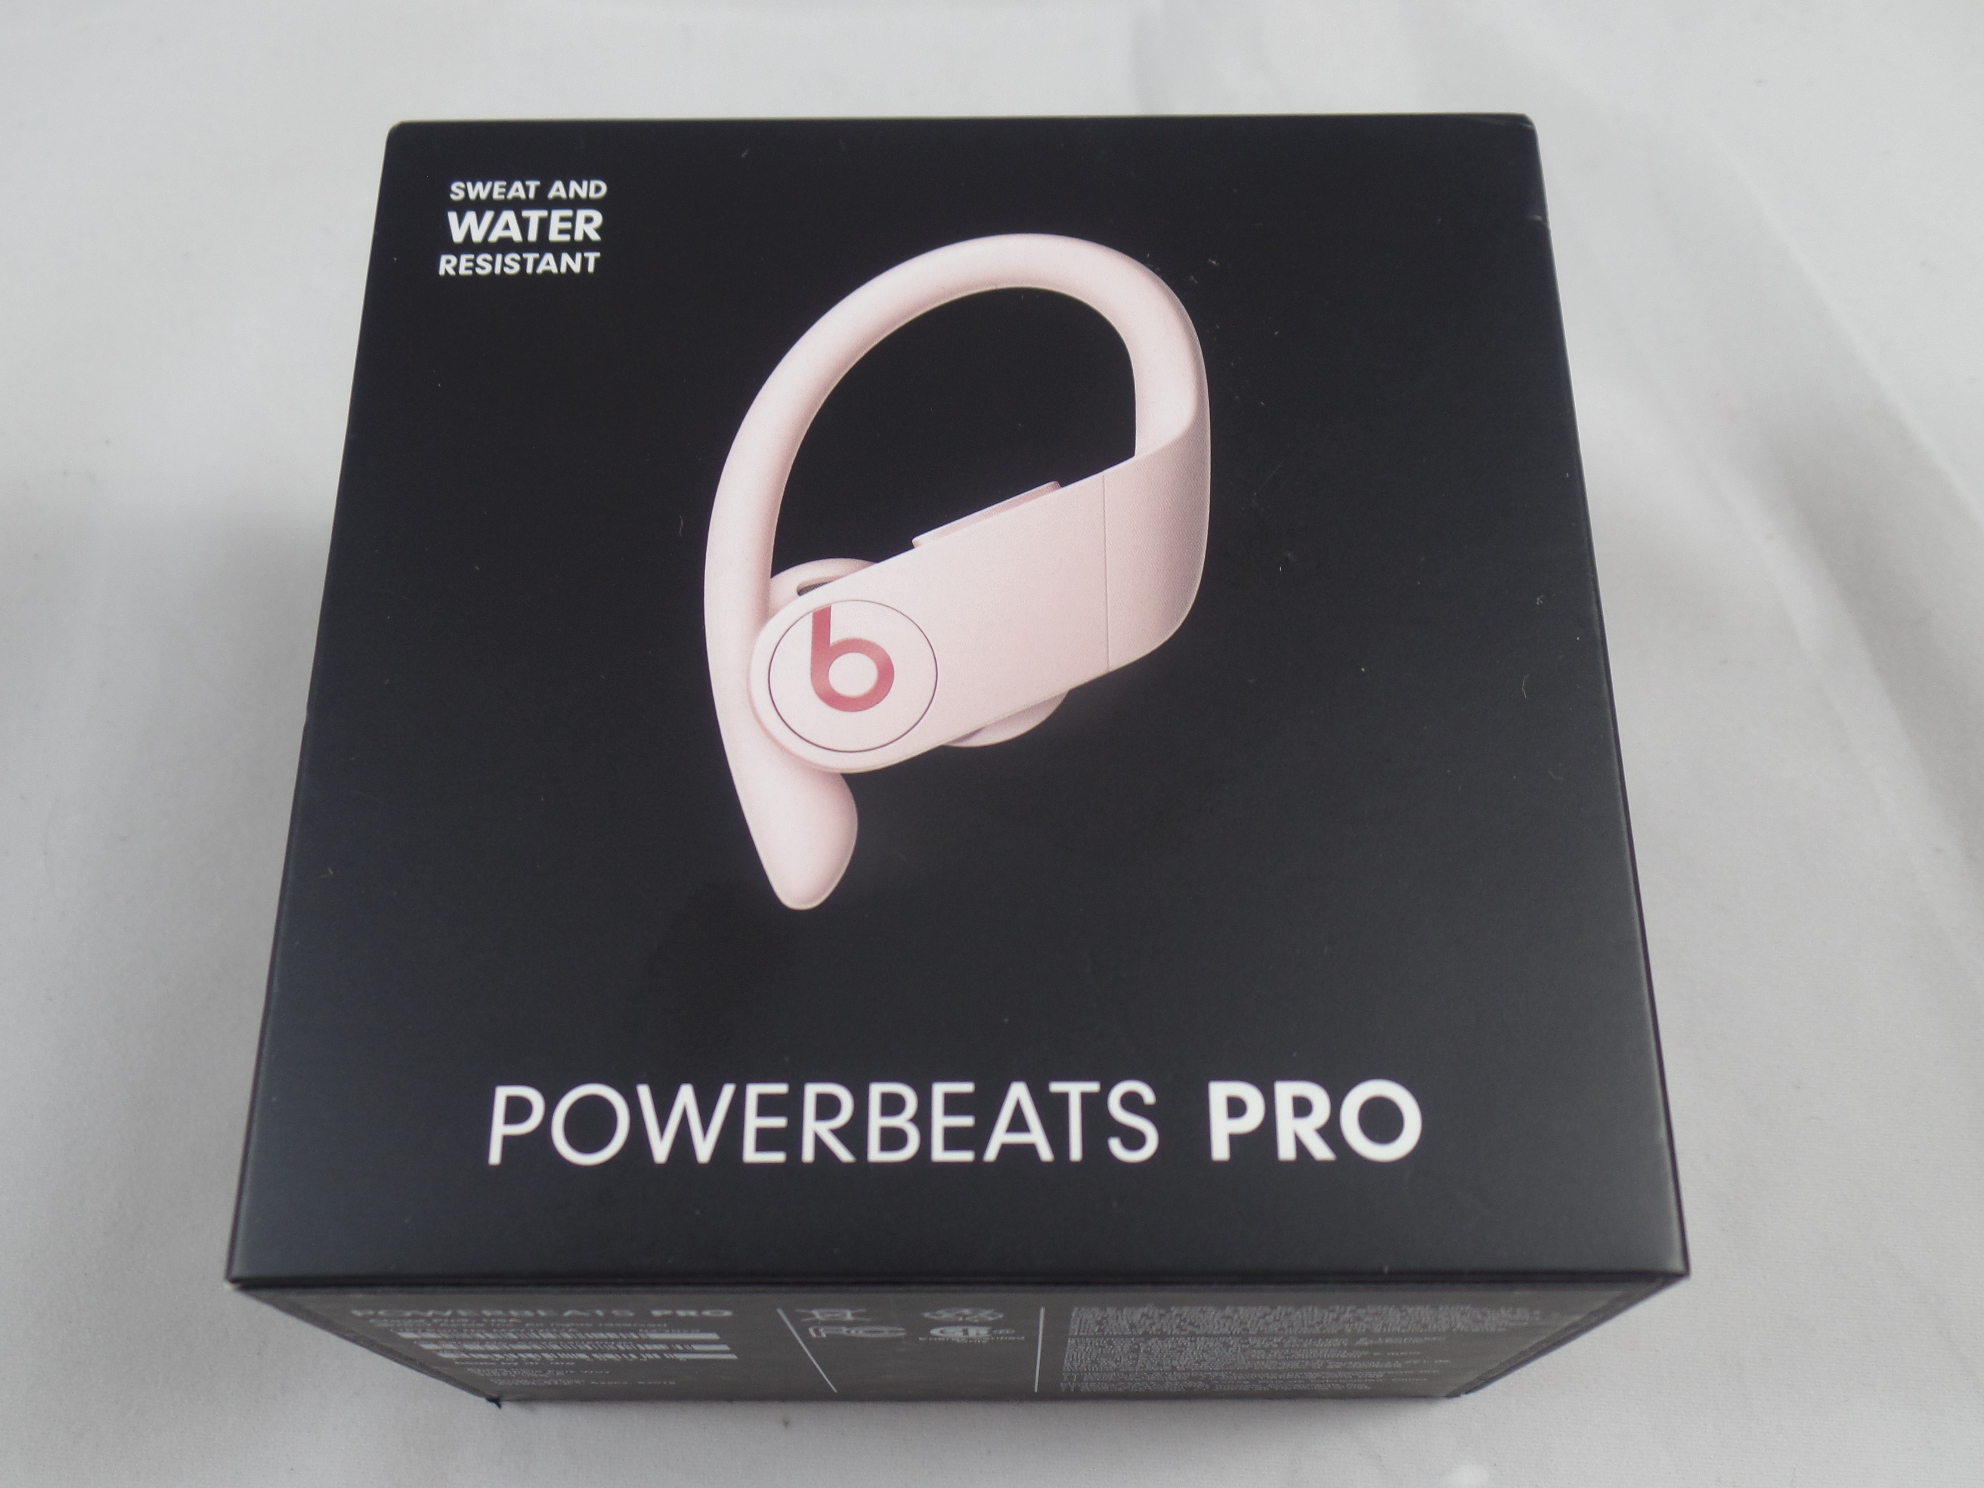 pink beats earphones